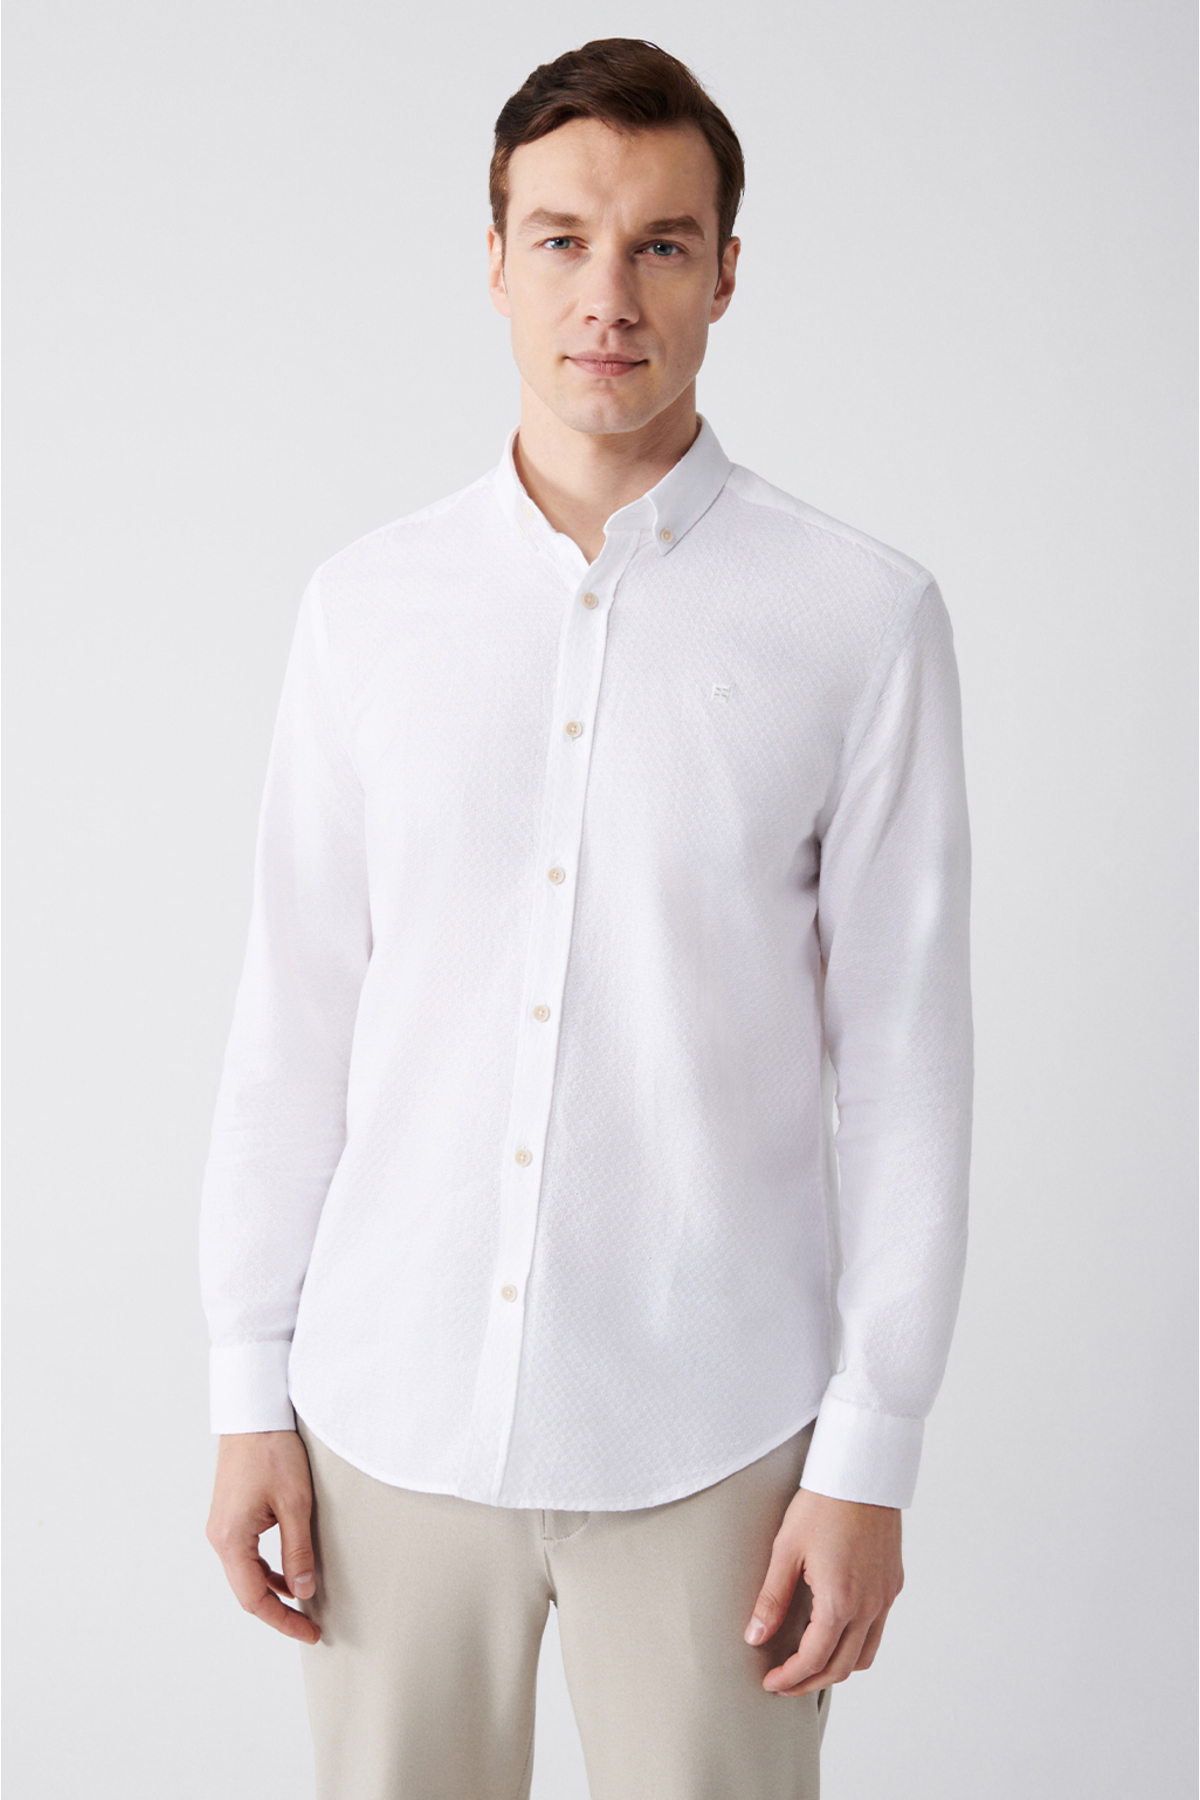 Avva Men's White 100% Cotton Buttoned Collar Standard Fit Regular Cut Shirt